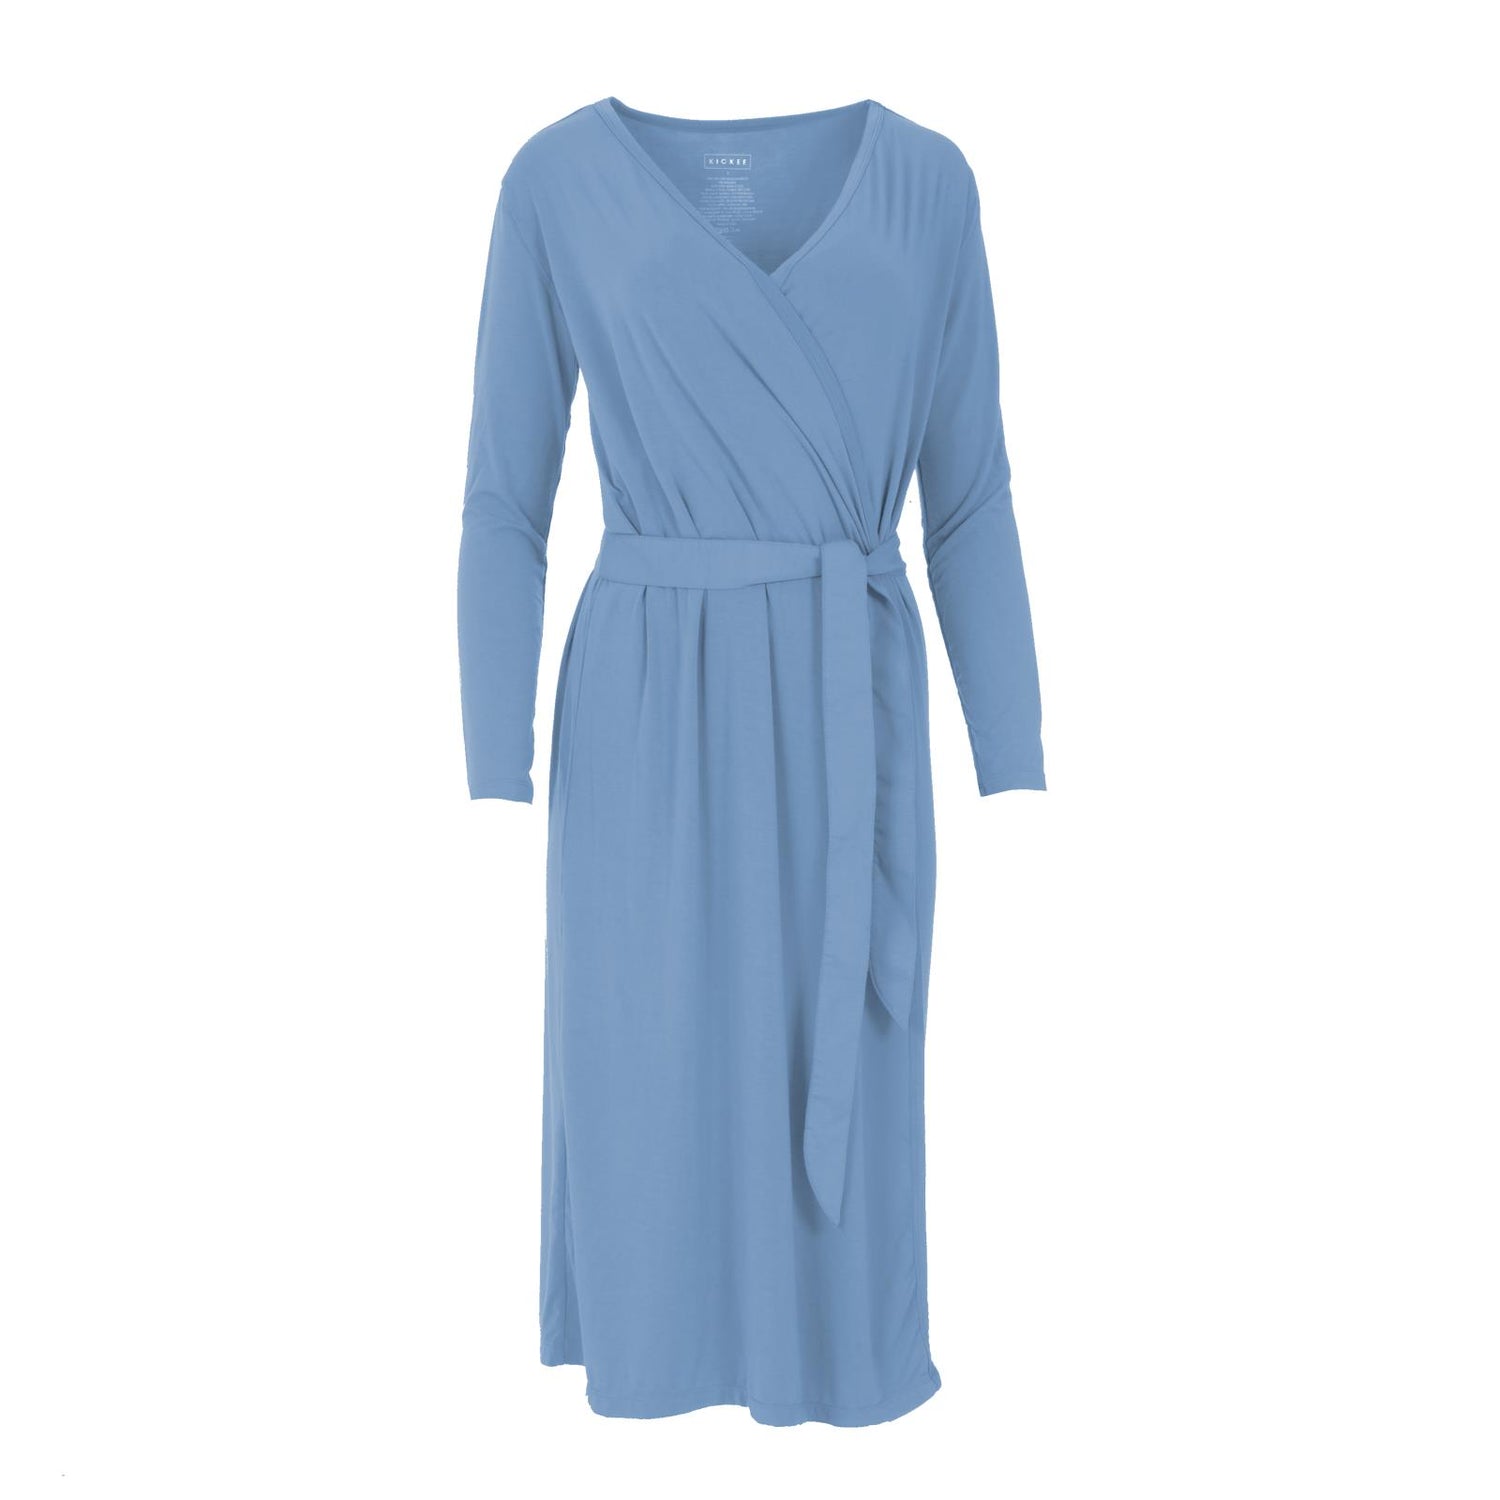 Women's Robe in Dream Blue